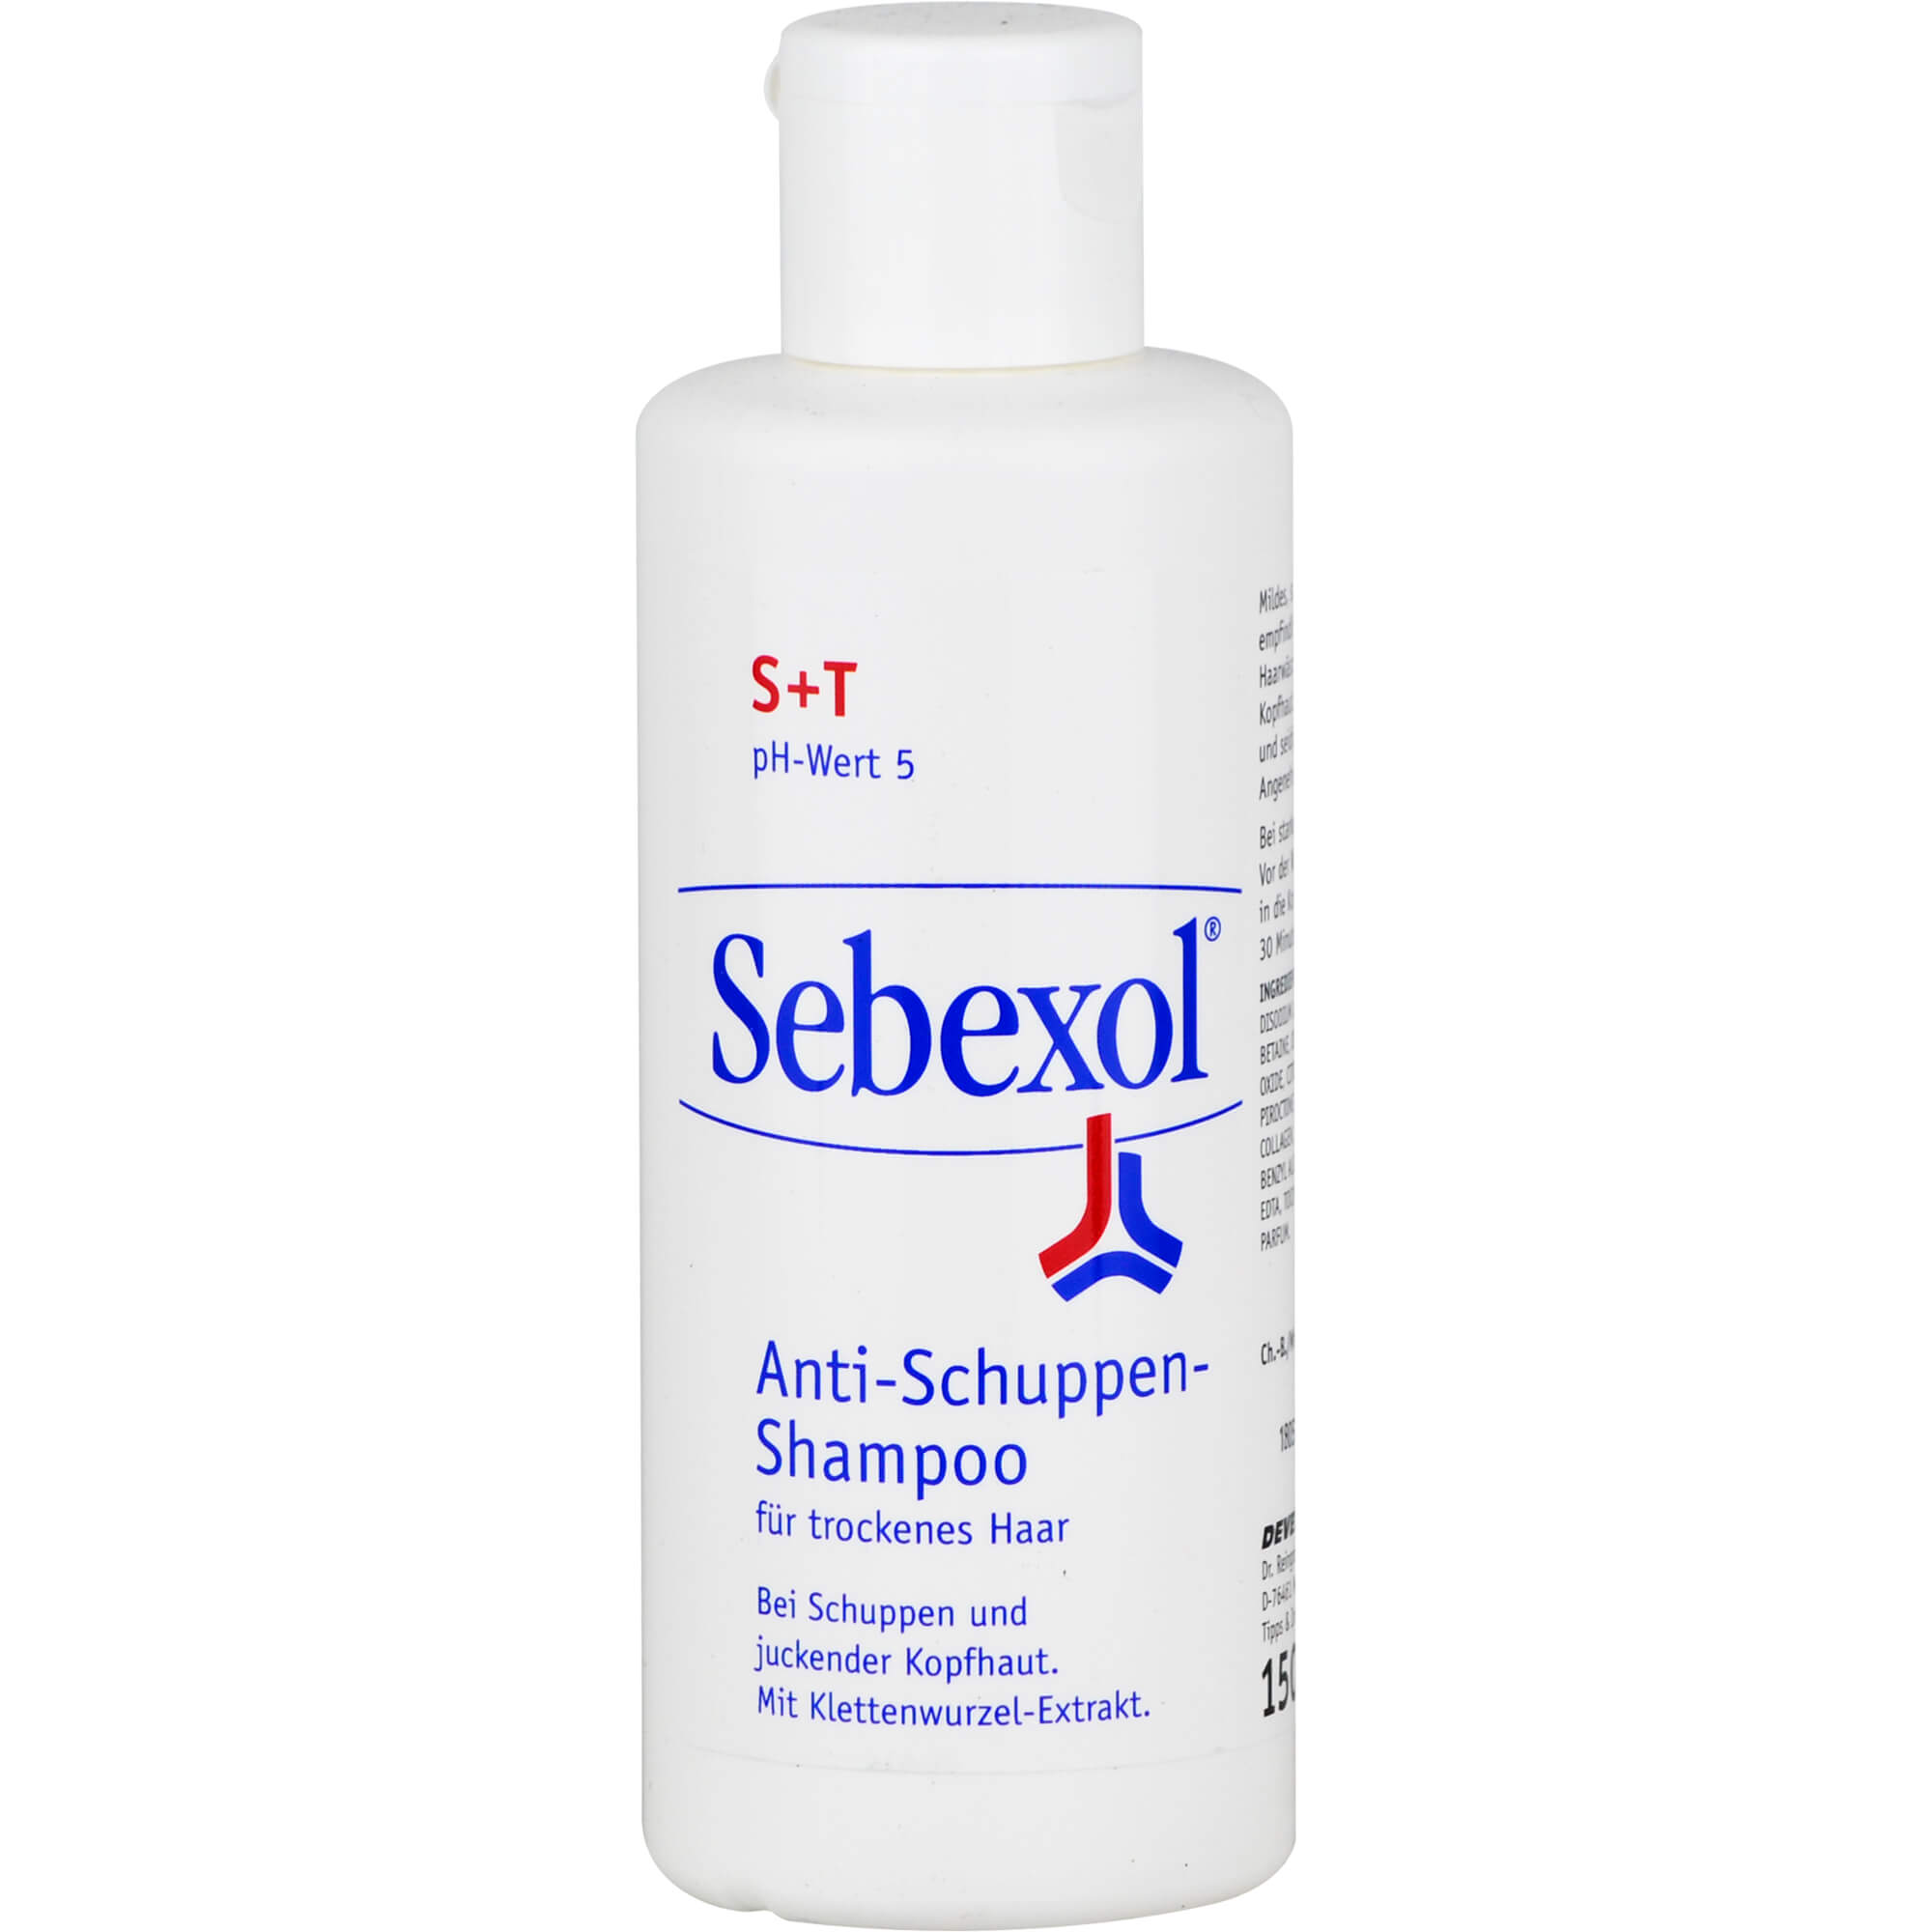 Shampoo mit Klettenwurzel-Extrakt zum Waschen bei Kopfschuppen, trockener oder juckender Kopfhaut.